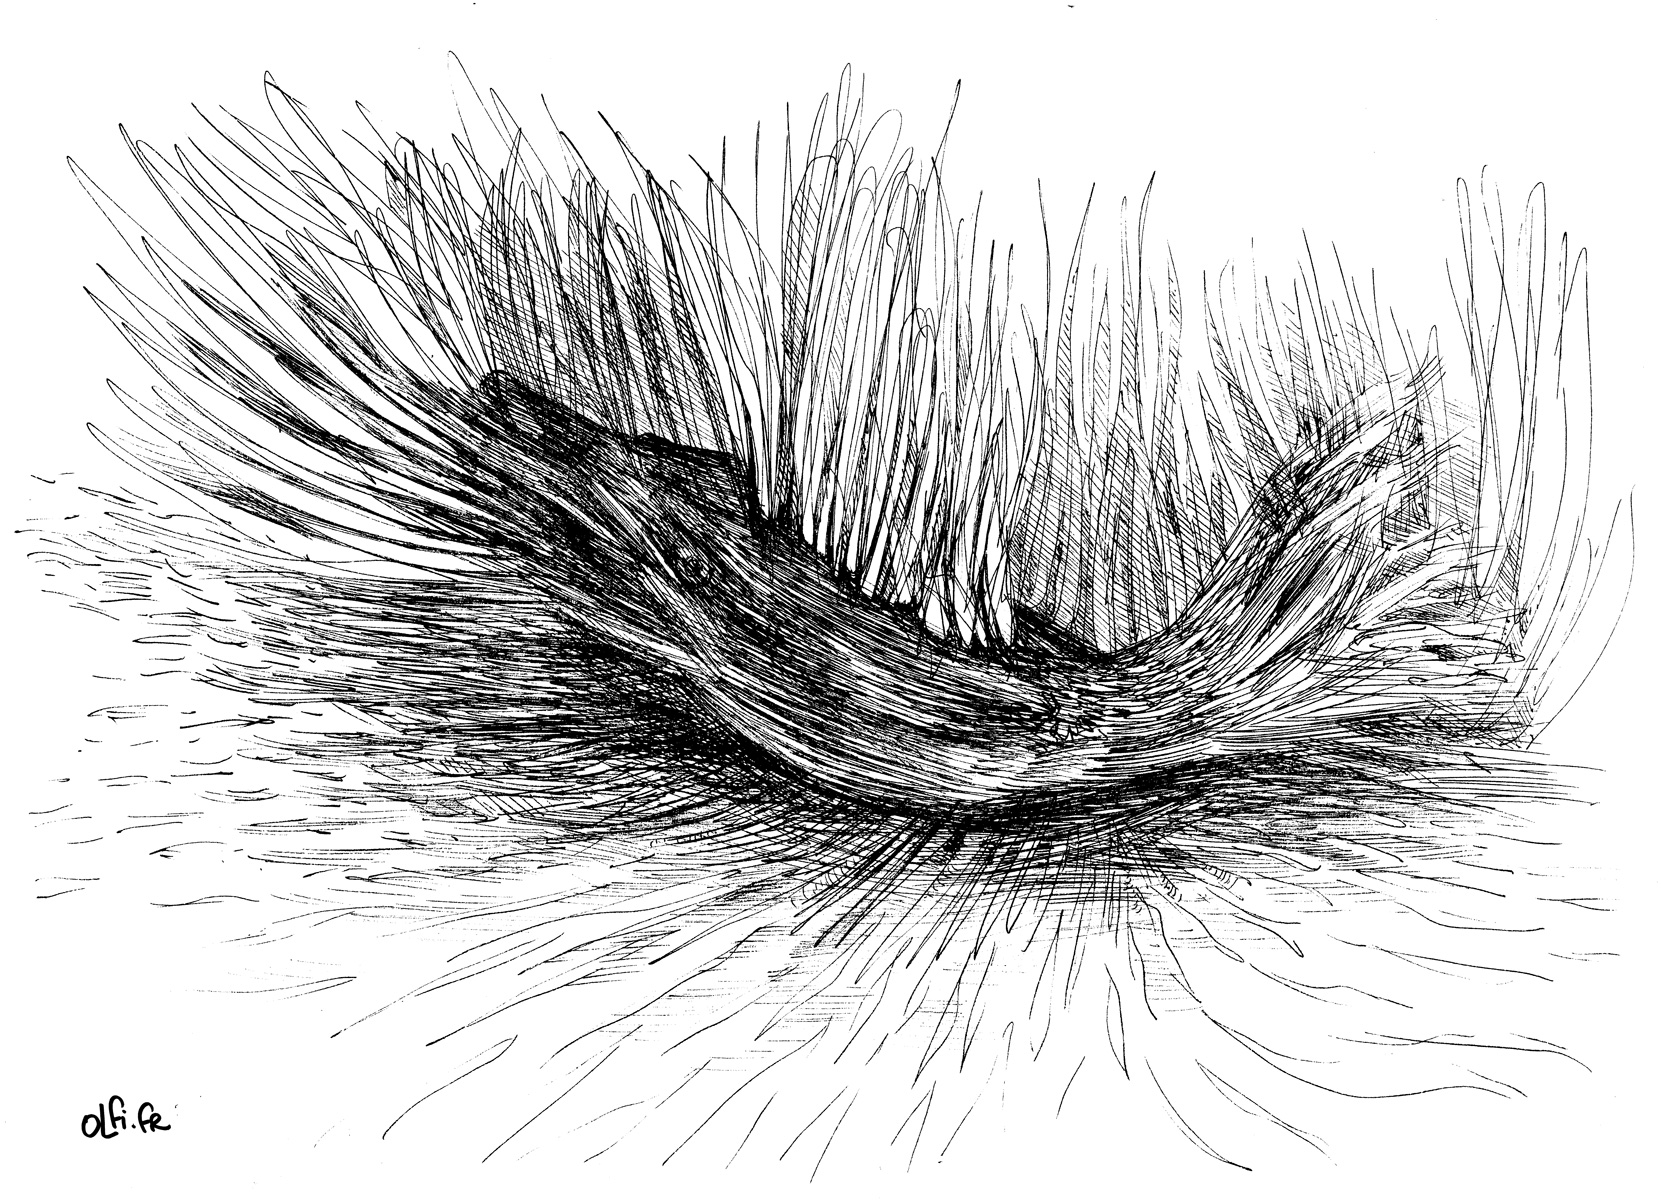 La truite mystique - Dessin à l'encre par OLFi